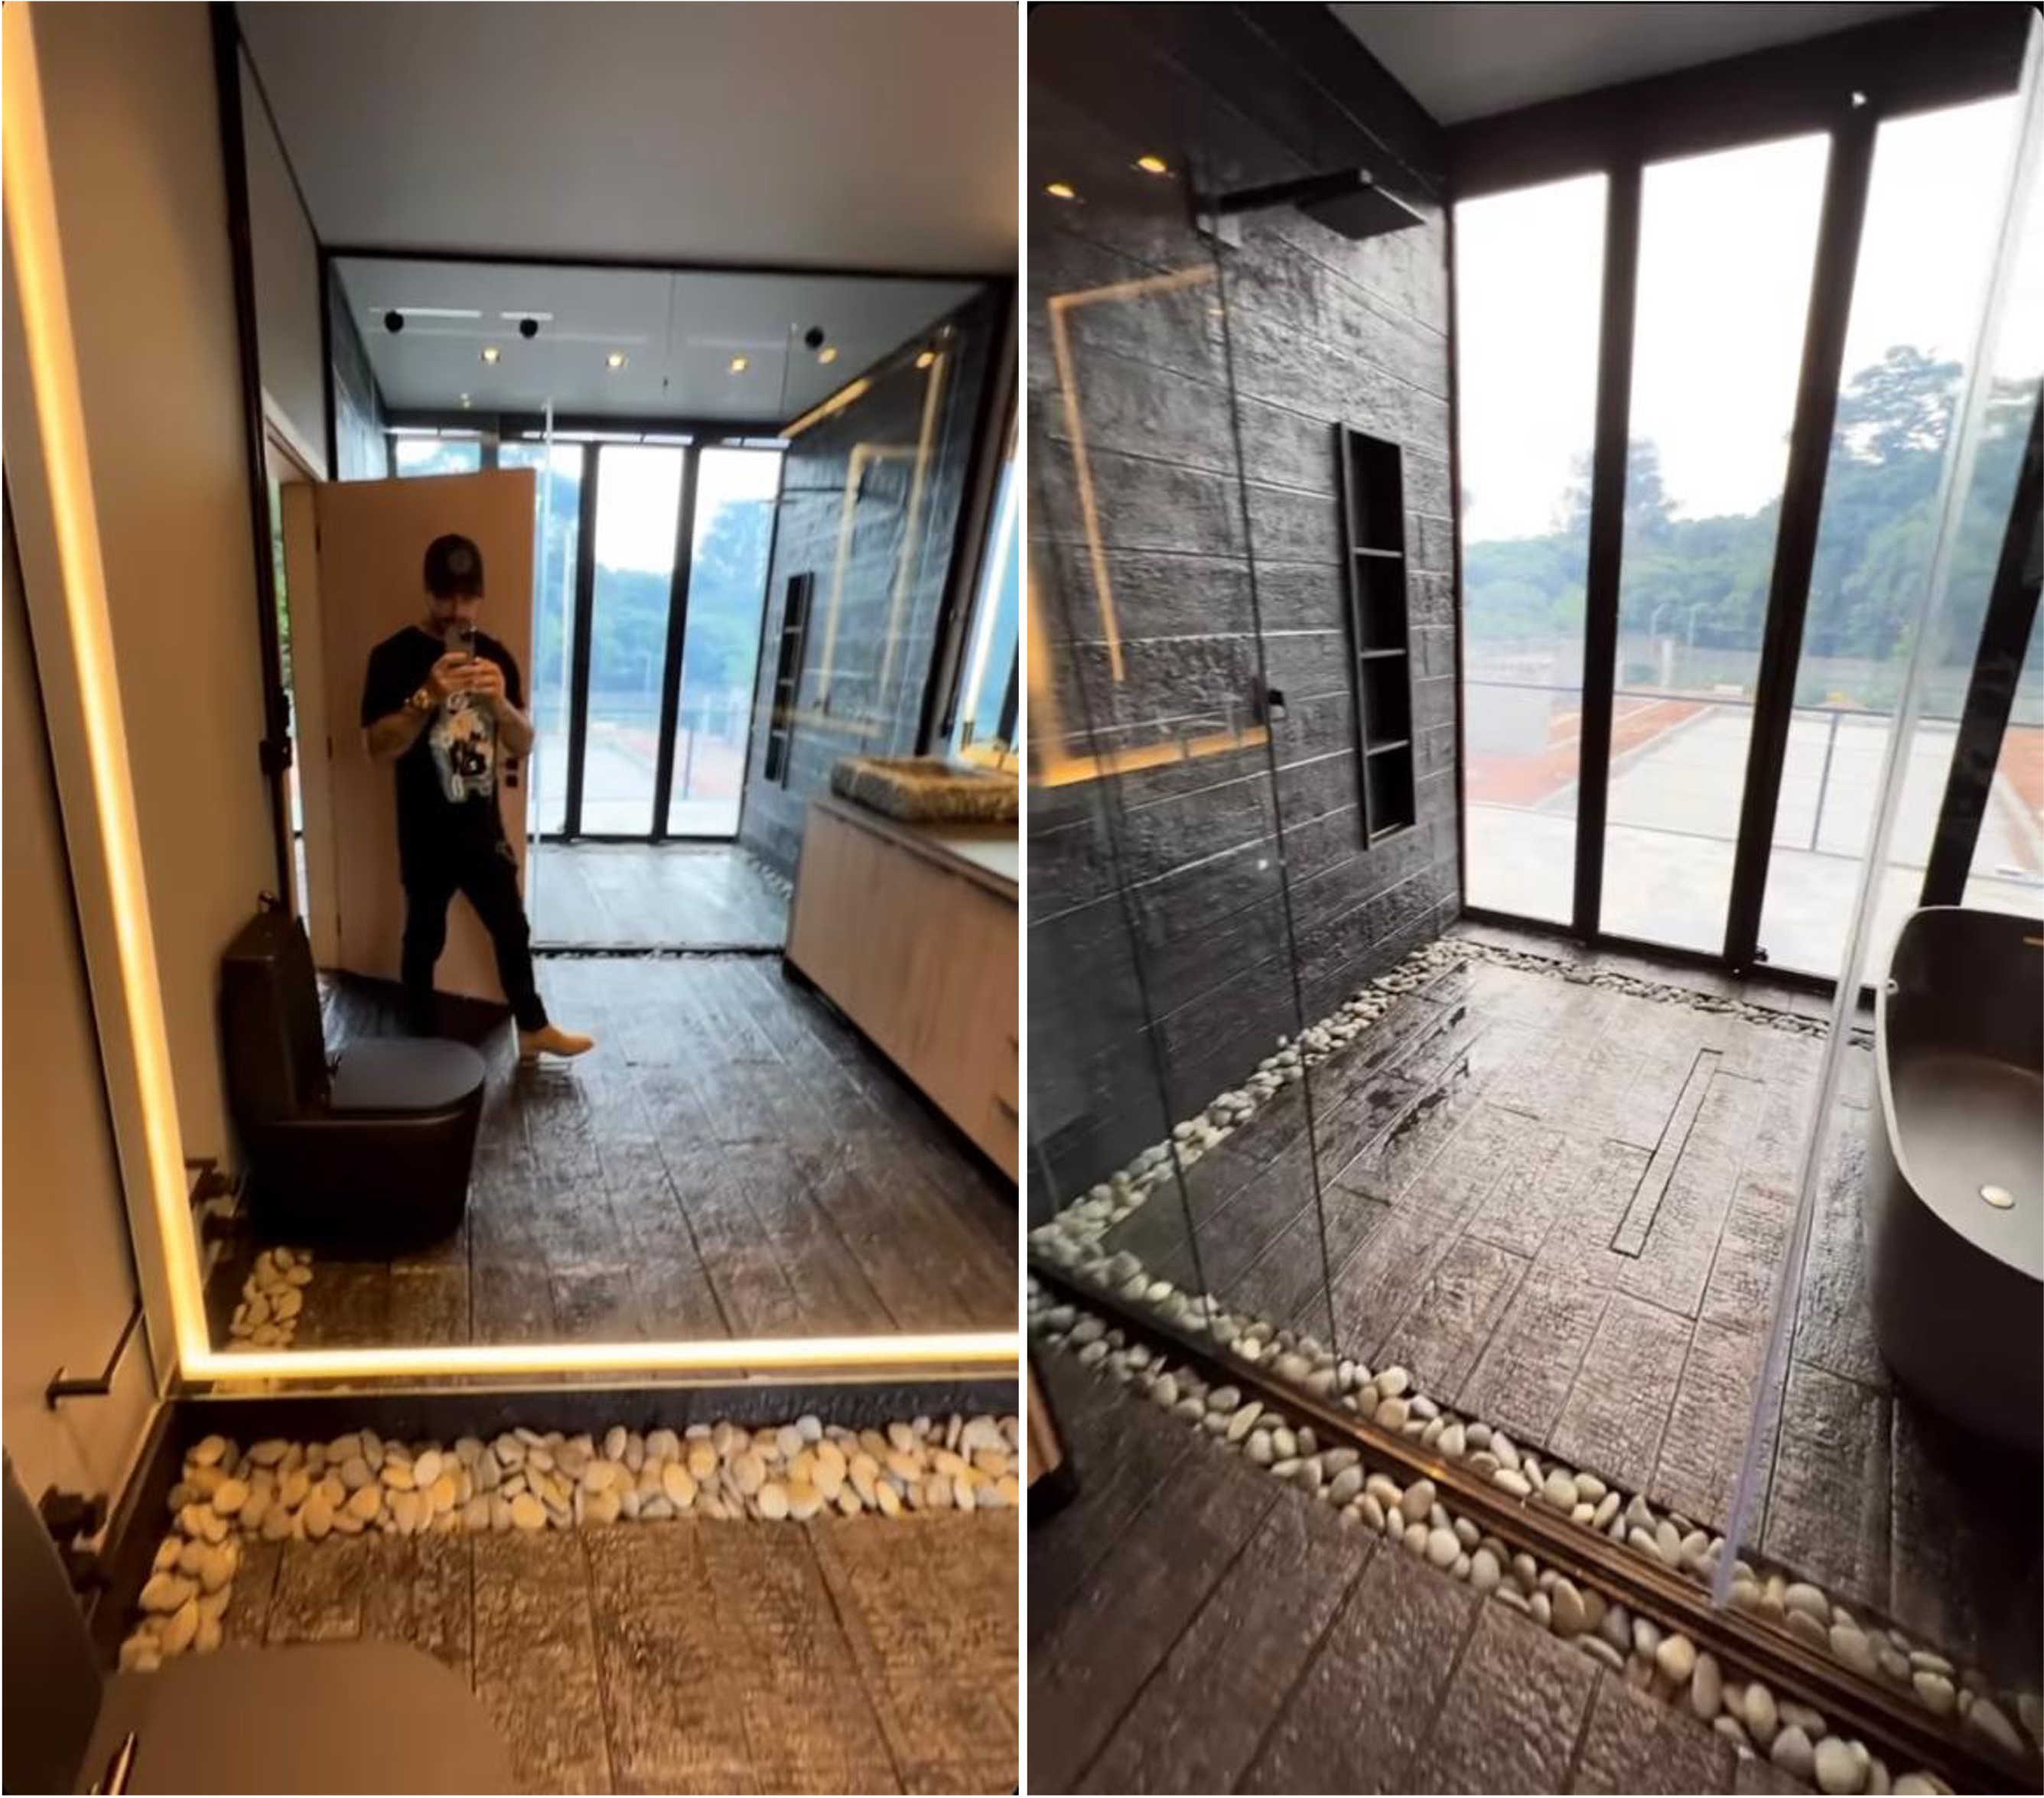 Felipe Tito faz tour por reforma de mansão e tamanho do banheiro impressiona (Foto: Reprodução/Instagram)